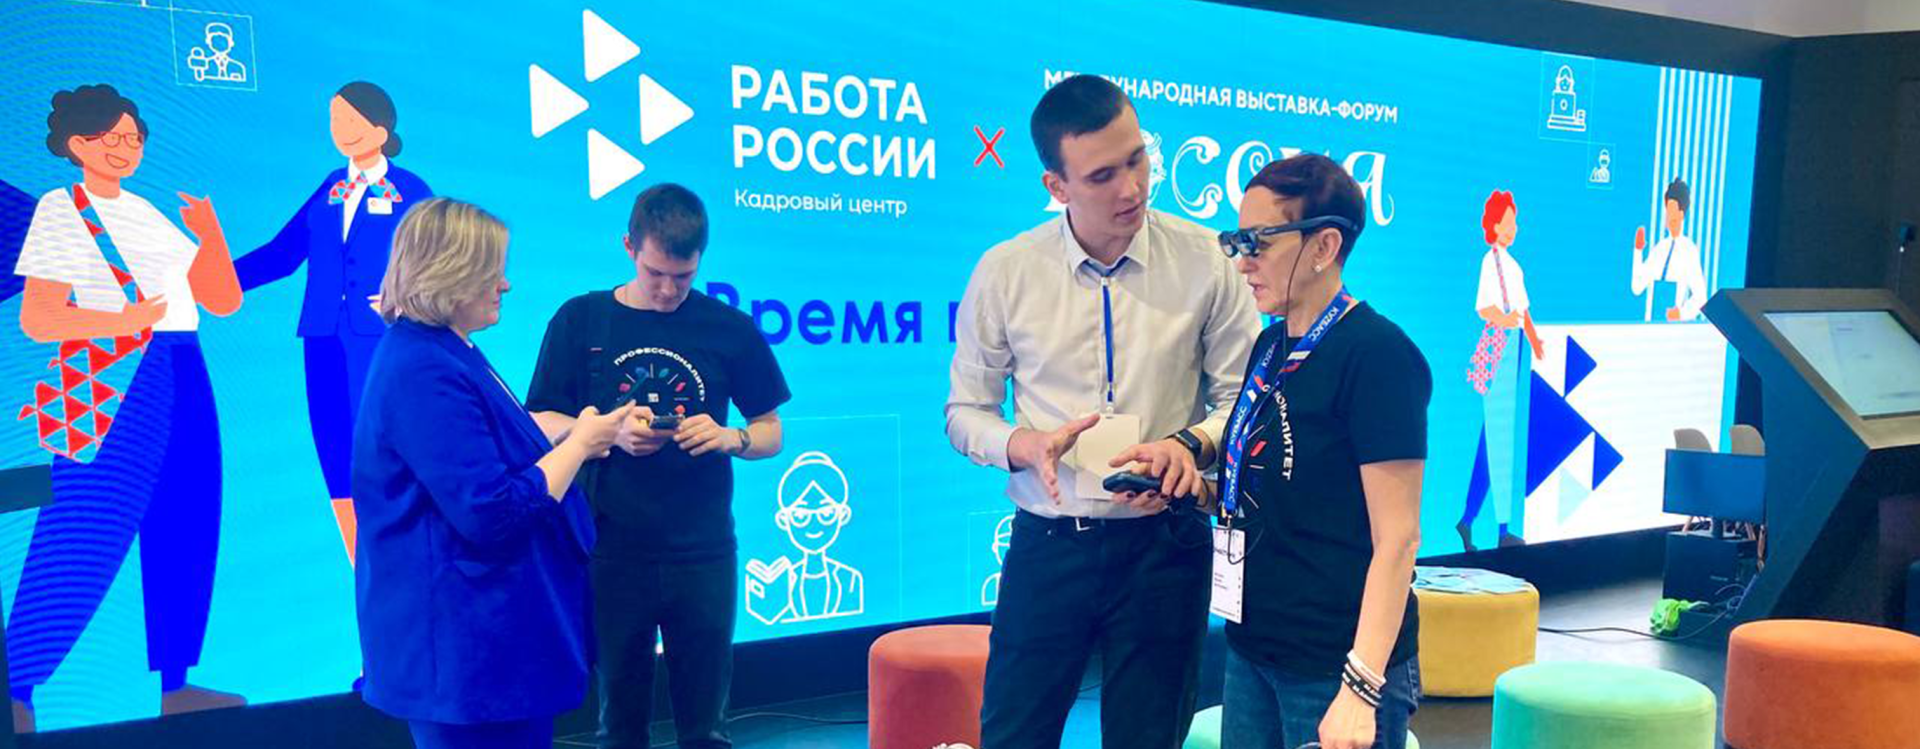 Студент СибГИУ представил систему дополненной реальности на выставке в Москве